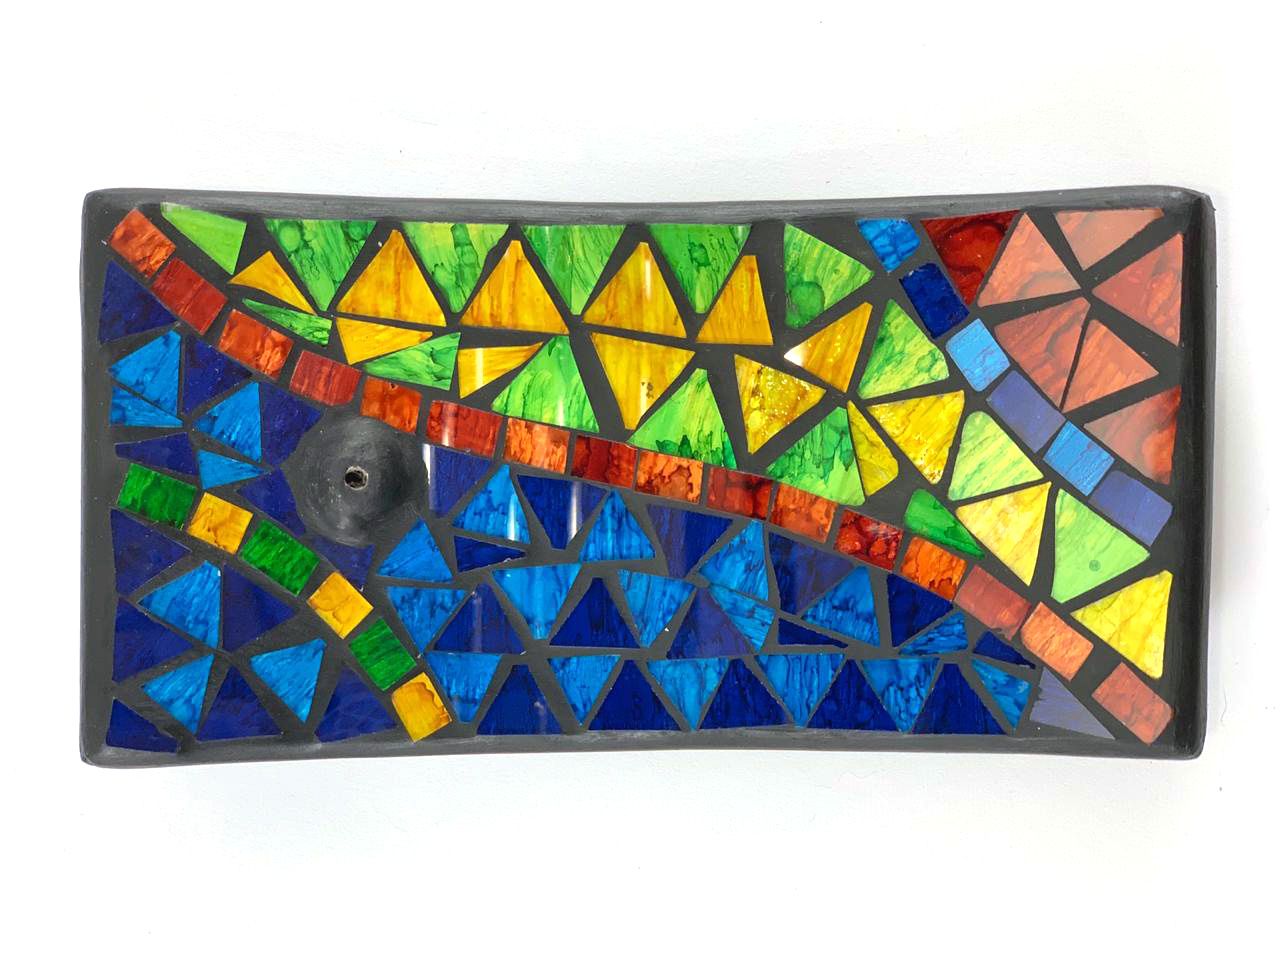 Porta Incensos Retangular de Cerâmica com Mosaico Triangular Colorido